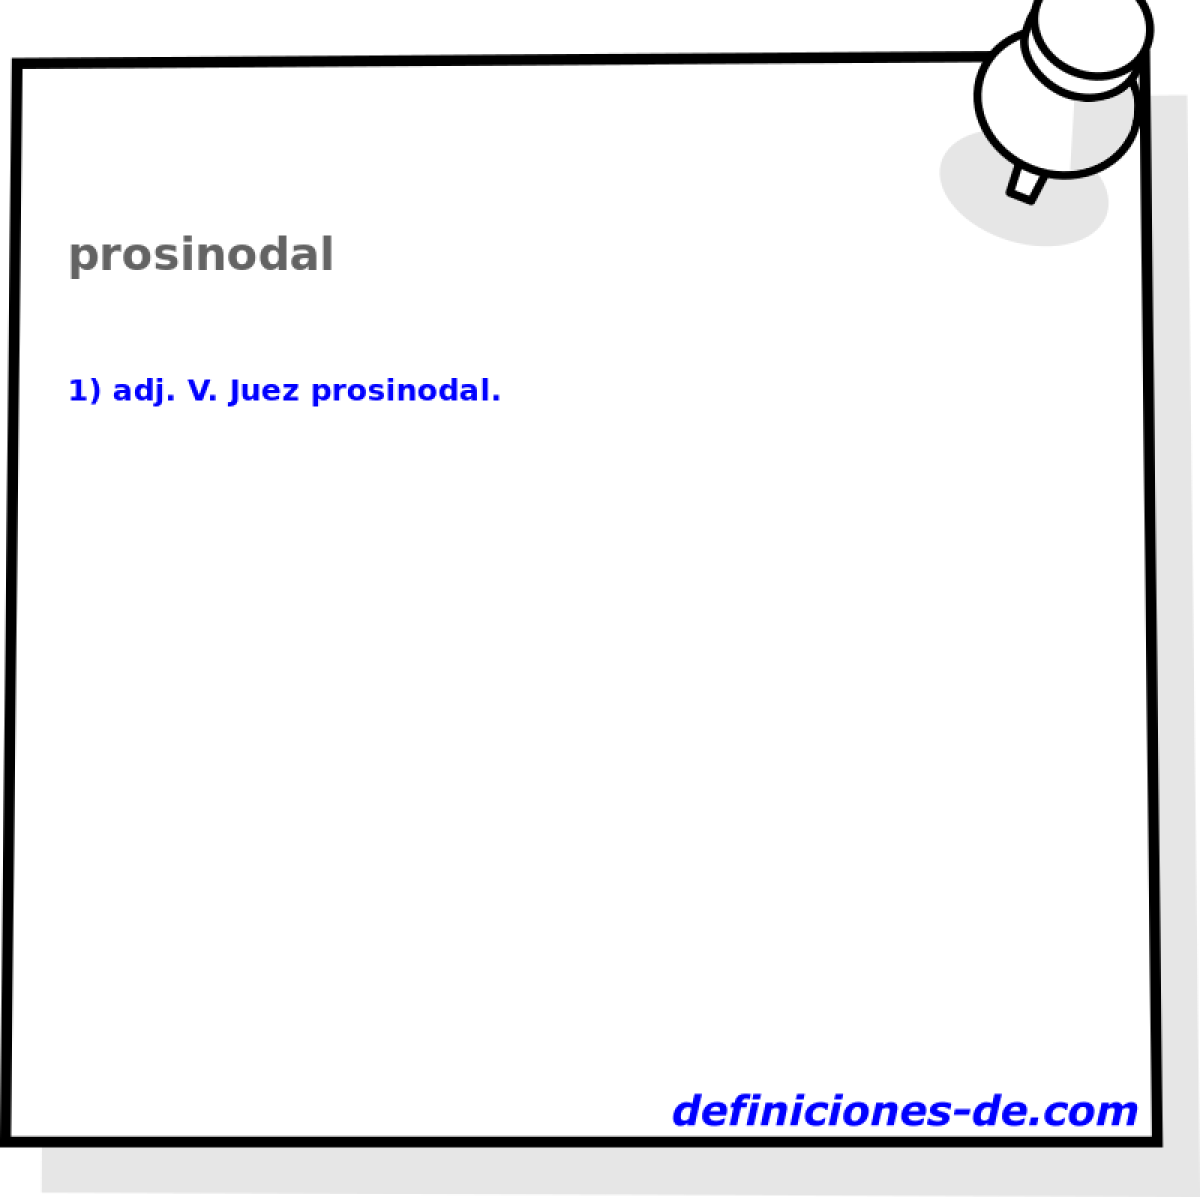 prosinodal 